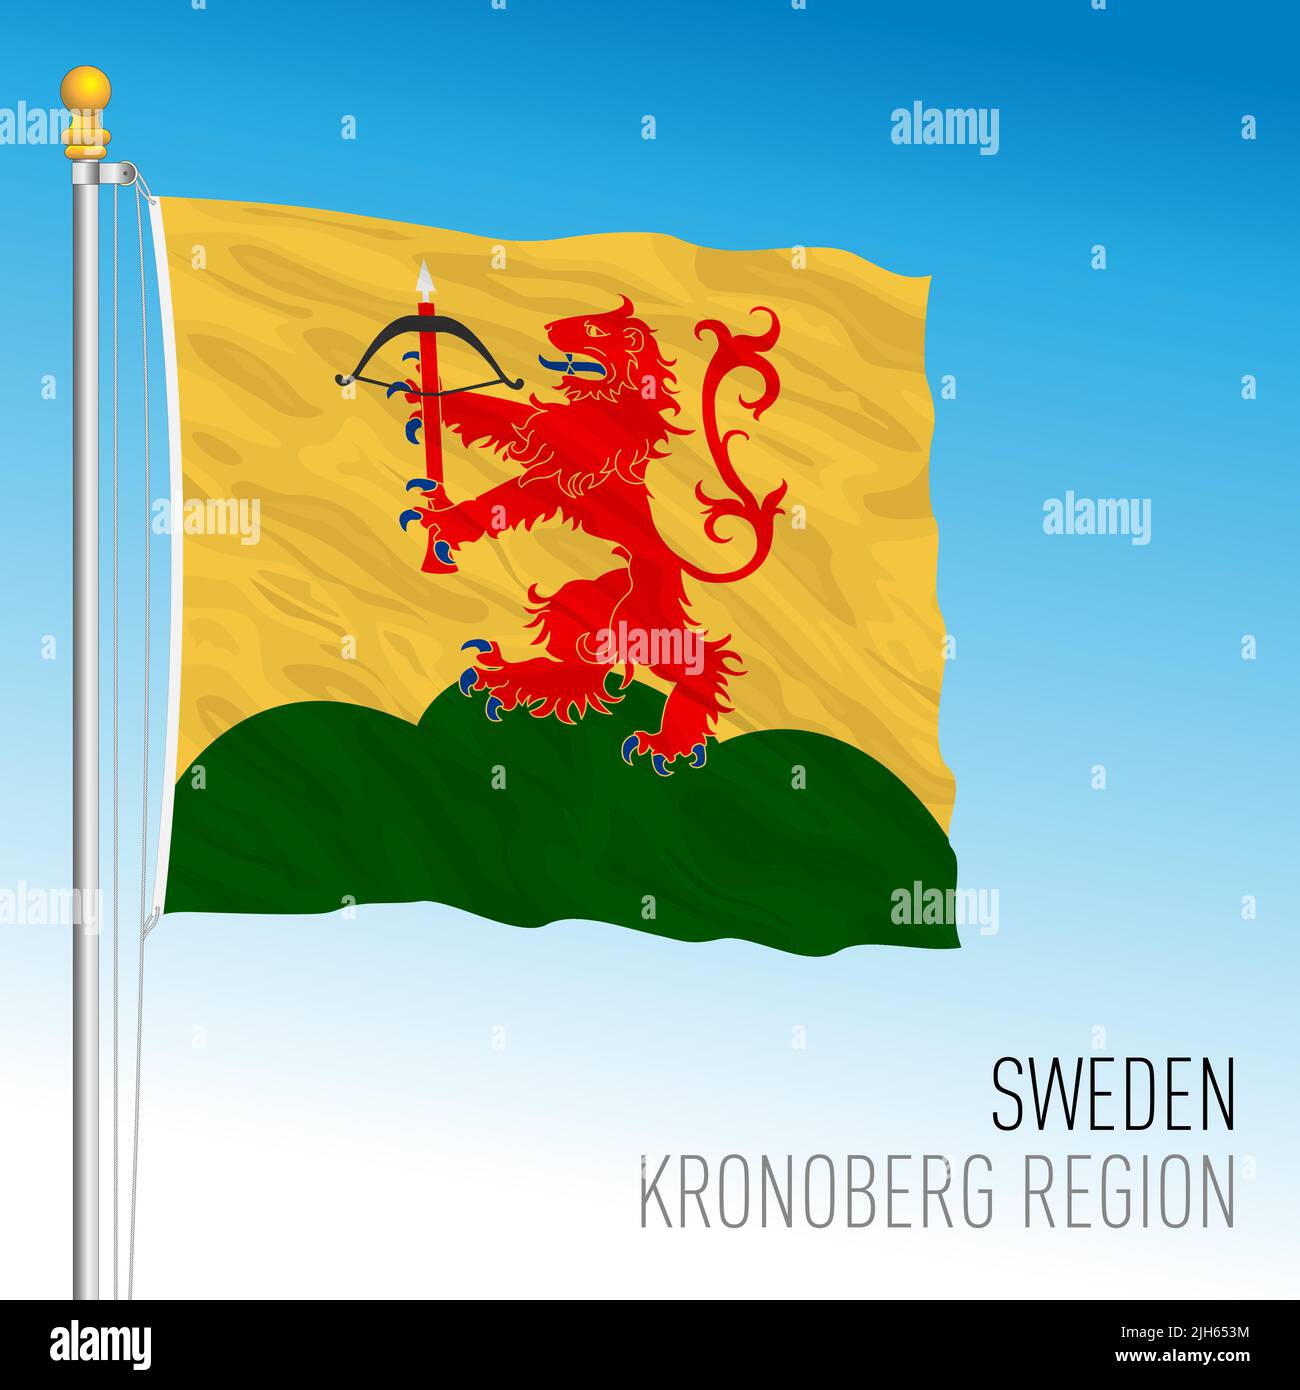 Pavillon régional de Kronoberg, Royaume de Suède, illustration vectorielle Illustration de Vecteur